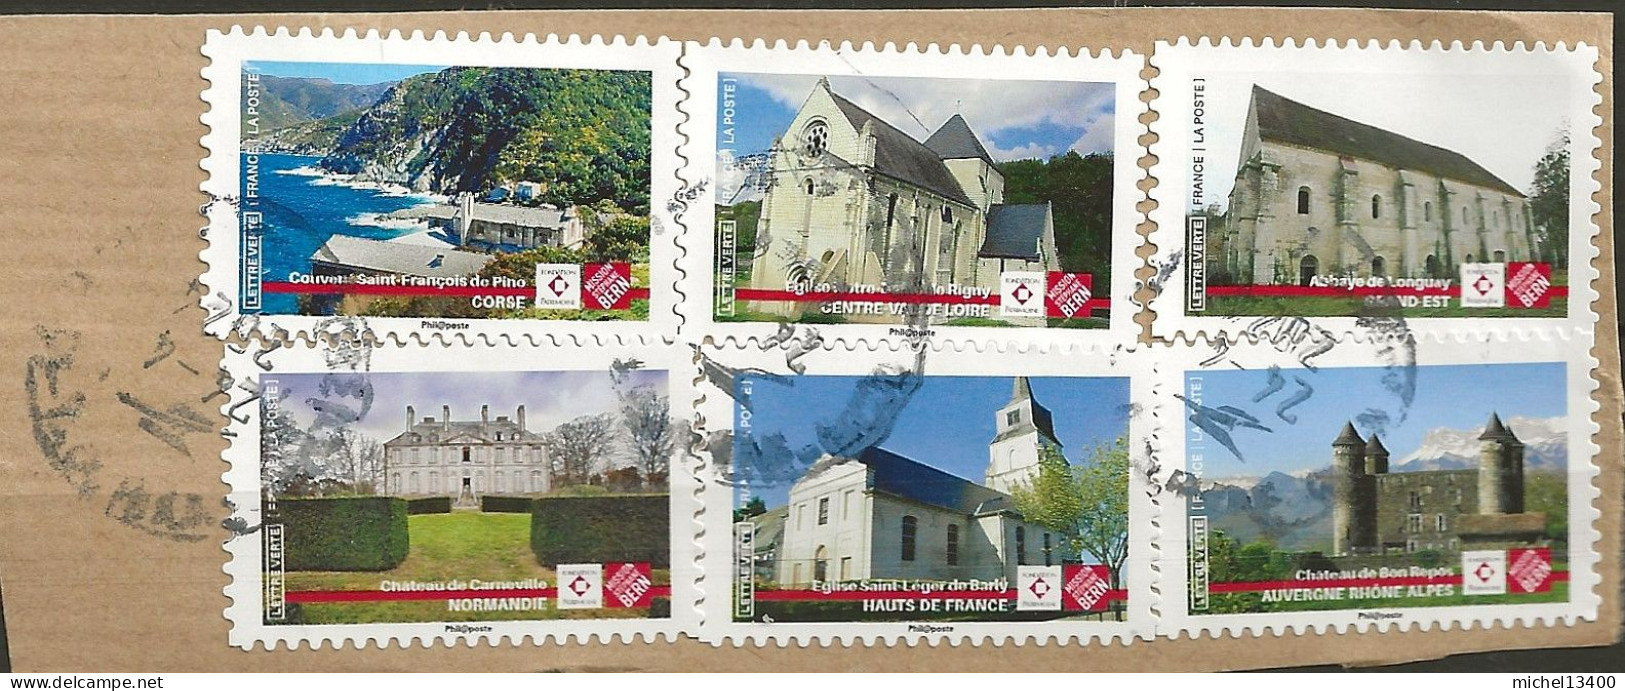 Année 2019 Patrimoine Cachet Rond Réf 1 - Used Stamps